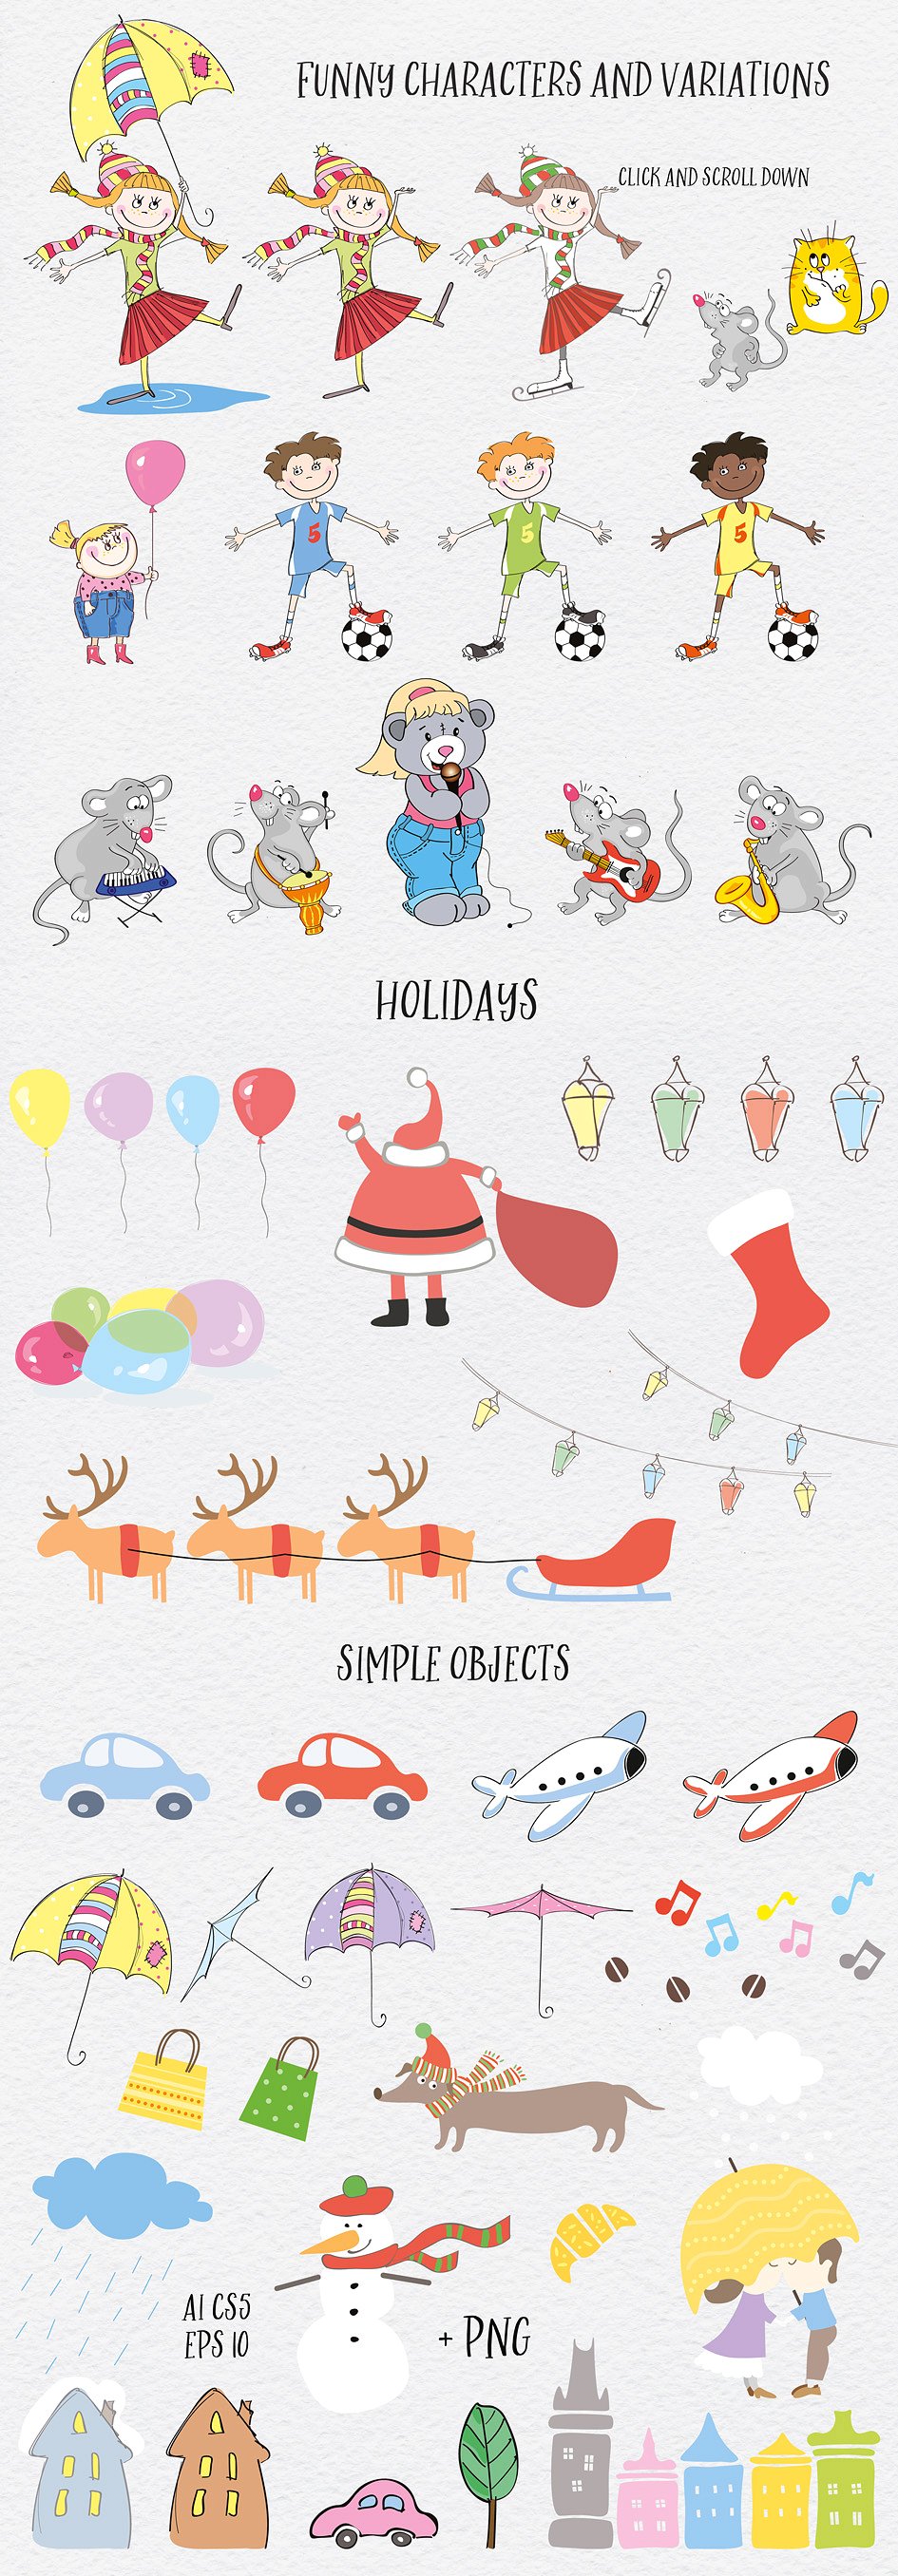 有趣的爱心冬季圣诞节情人节节日素材包下载[EPS,JPG]插图(4)